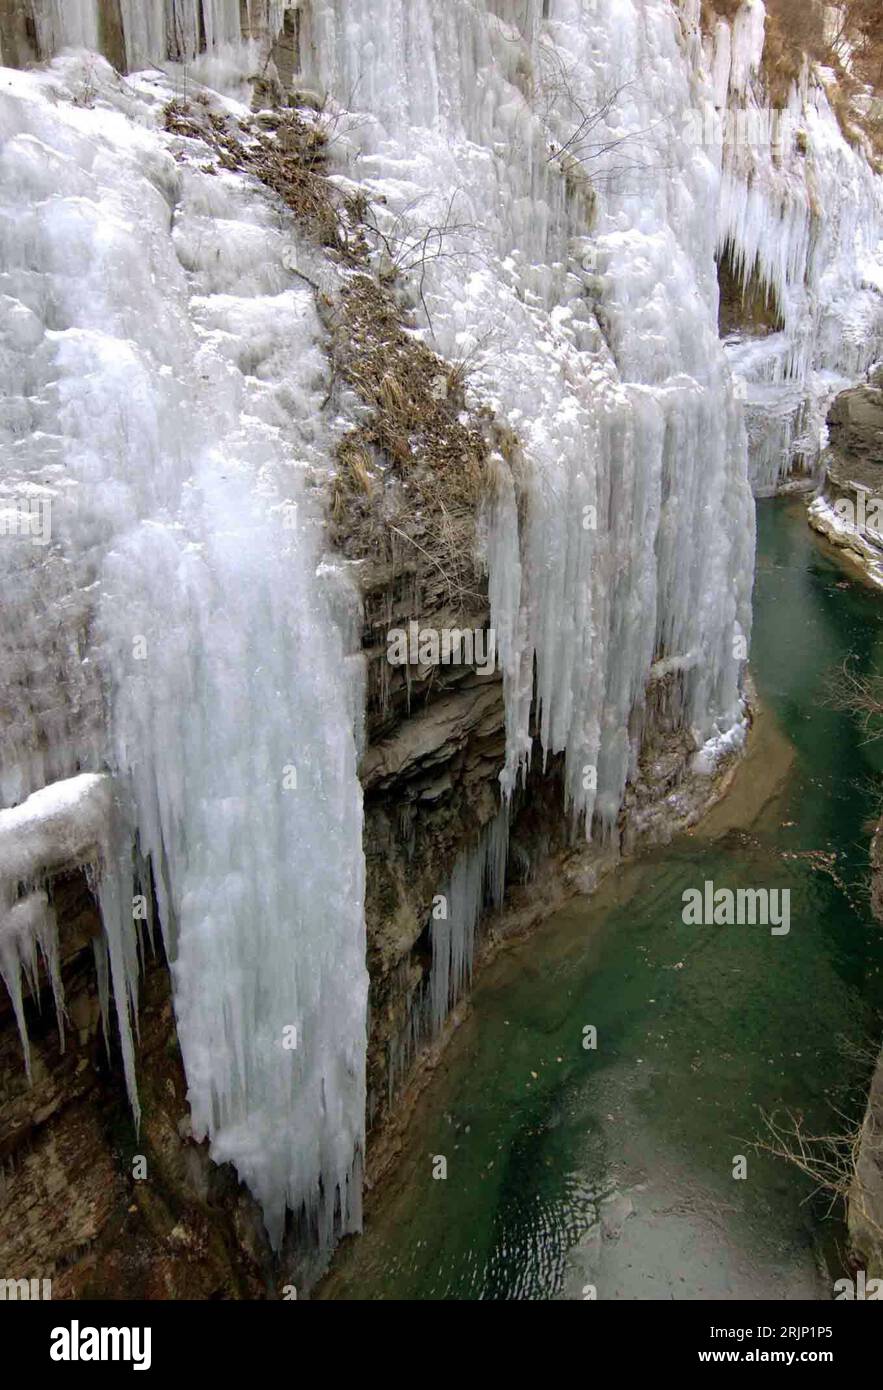 Bildnummer: 51050814  Datum: 06.01.2006  Copyright: imago/Xinhua Wasserfall Zhengzhou - PUBLICATIONxNOTxINxCHN Gefrorener Wasserfall im Yuntai Gebirge in Jiaozou - China - PUBLICATIONxNOTxINxCHN, Landschaft; 2006, Jiaozou City, Provinz Henan, Eisfall, Eisfälle, Wasserfall, Wasserfälle, Eis, gefrorenes, gefroren, gefrorene, Kälteeinbruch, Kälteeinbrüche, Eis, Temperaturabfall, Kälte, Temperatur, Temperaturen, Wintereinbruch, vereist, vereiste, vereister, Natur; , hoch, Kbdig, Winter, Jahreszeit, Einzelbild, Gebirge, China,  , Stock Photo